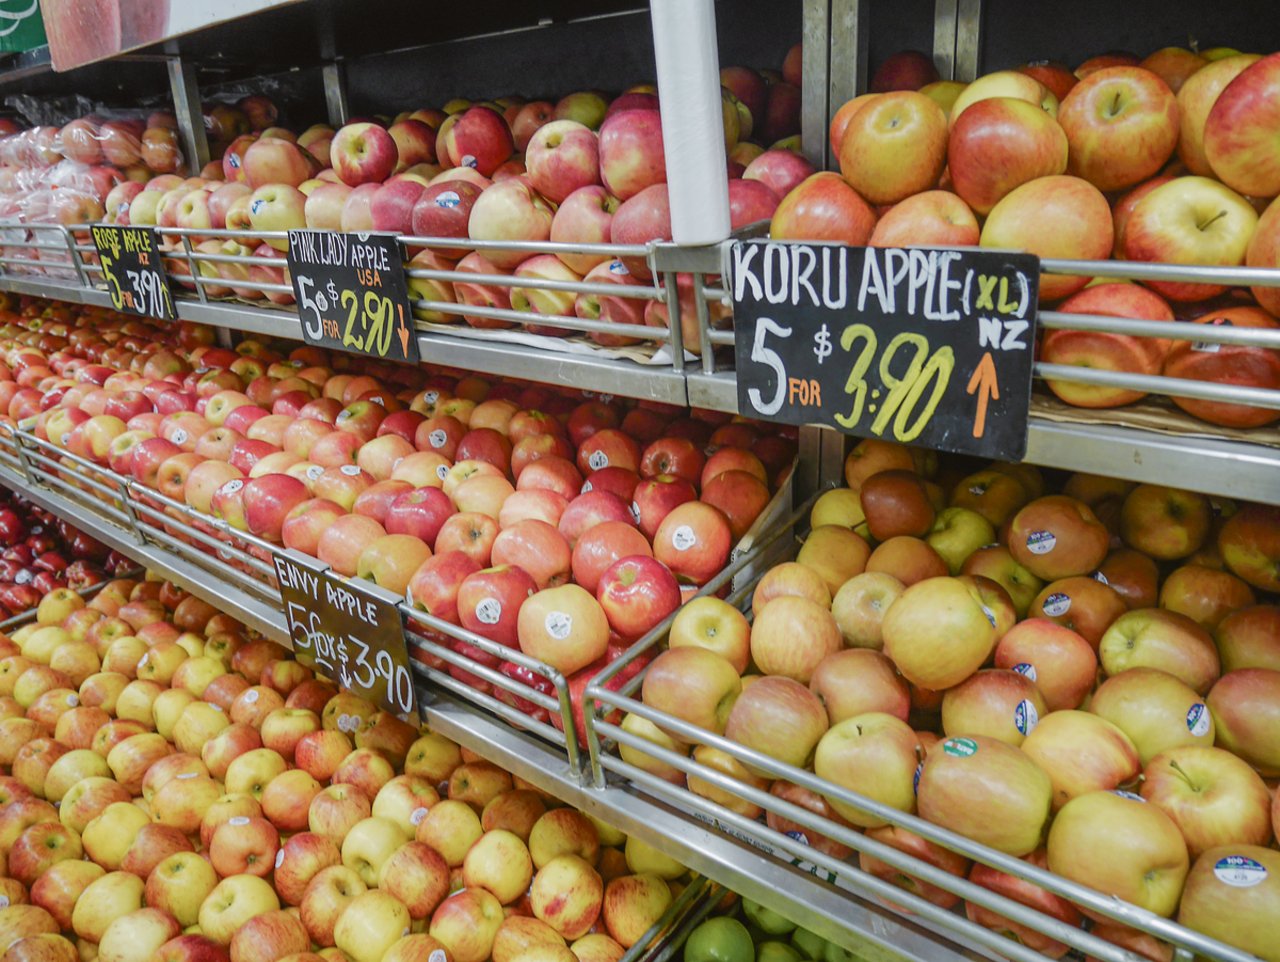 Neuseeland, USA, Australien: Äpfel werden aus aller Welt importiert. Bio-Labels sucht man allerdings vergeblich.